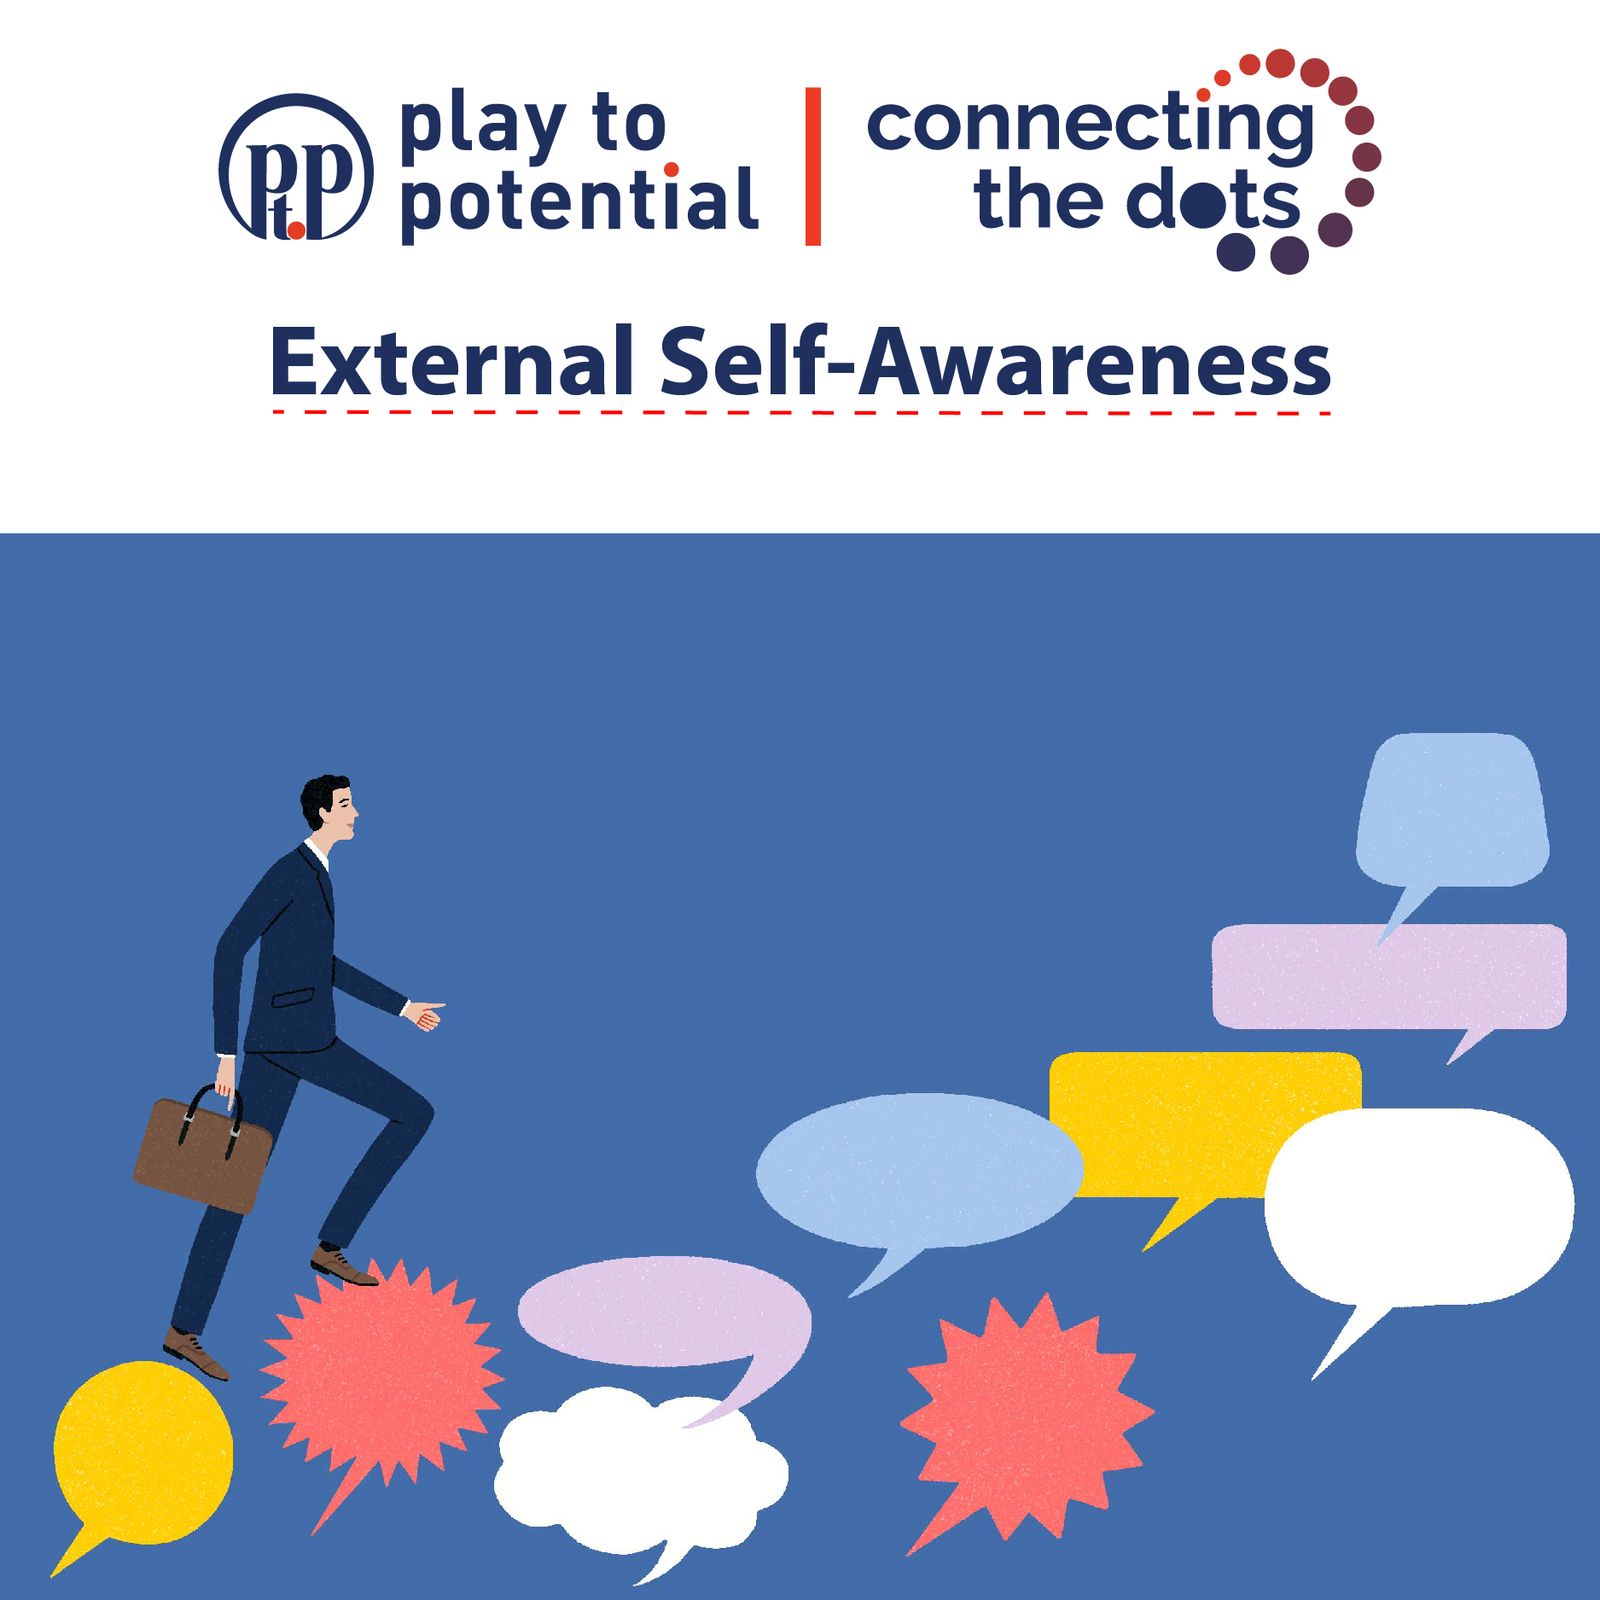 678: EP2: Connecting the Dots - External Self-awareness